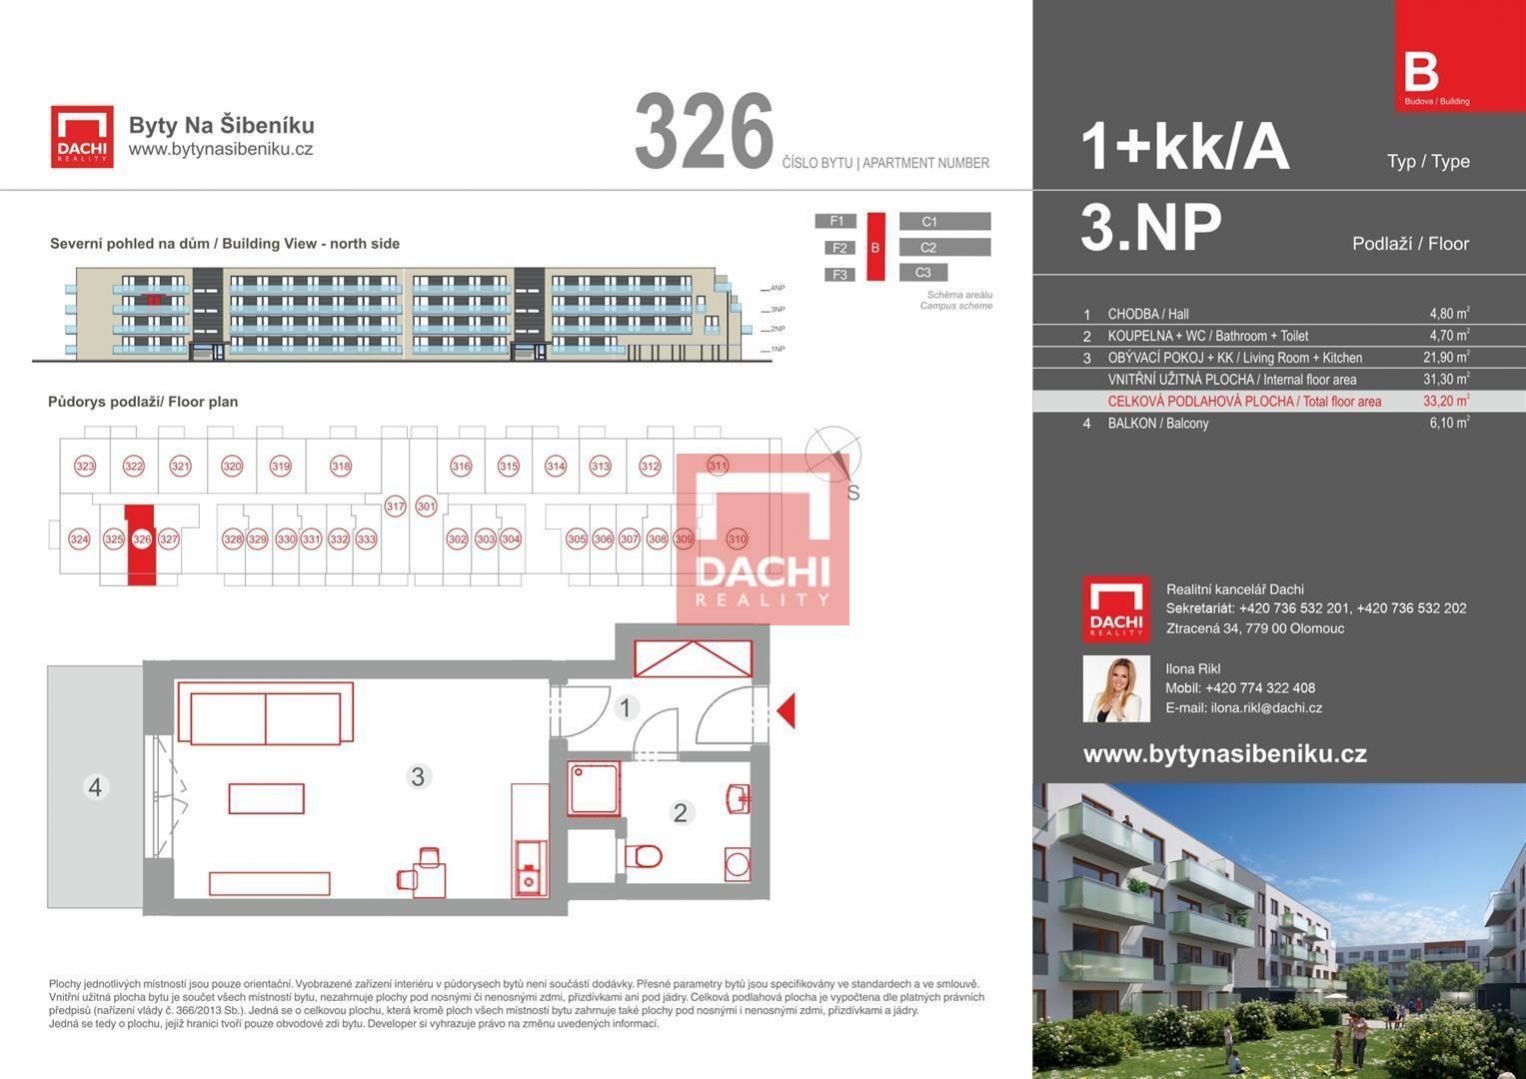 Prodej novostavby bytu B.326  1+kk  33,20m s balkonem 6,10m, Olomouc, Byty Na Šibeníku II.etapa, obrázek č. 1